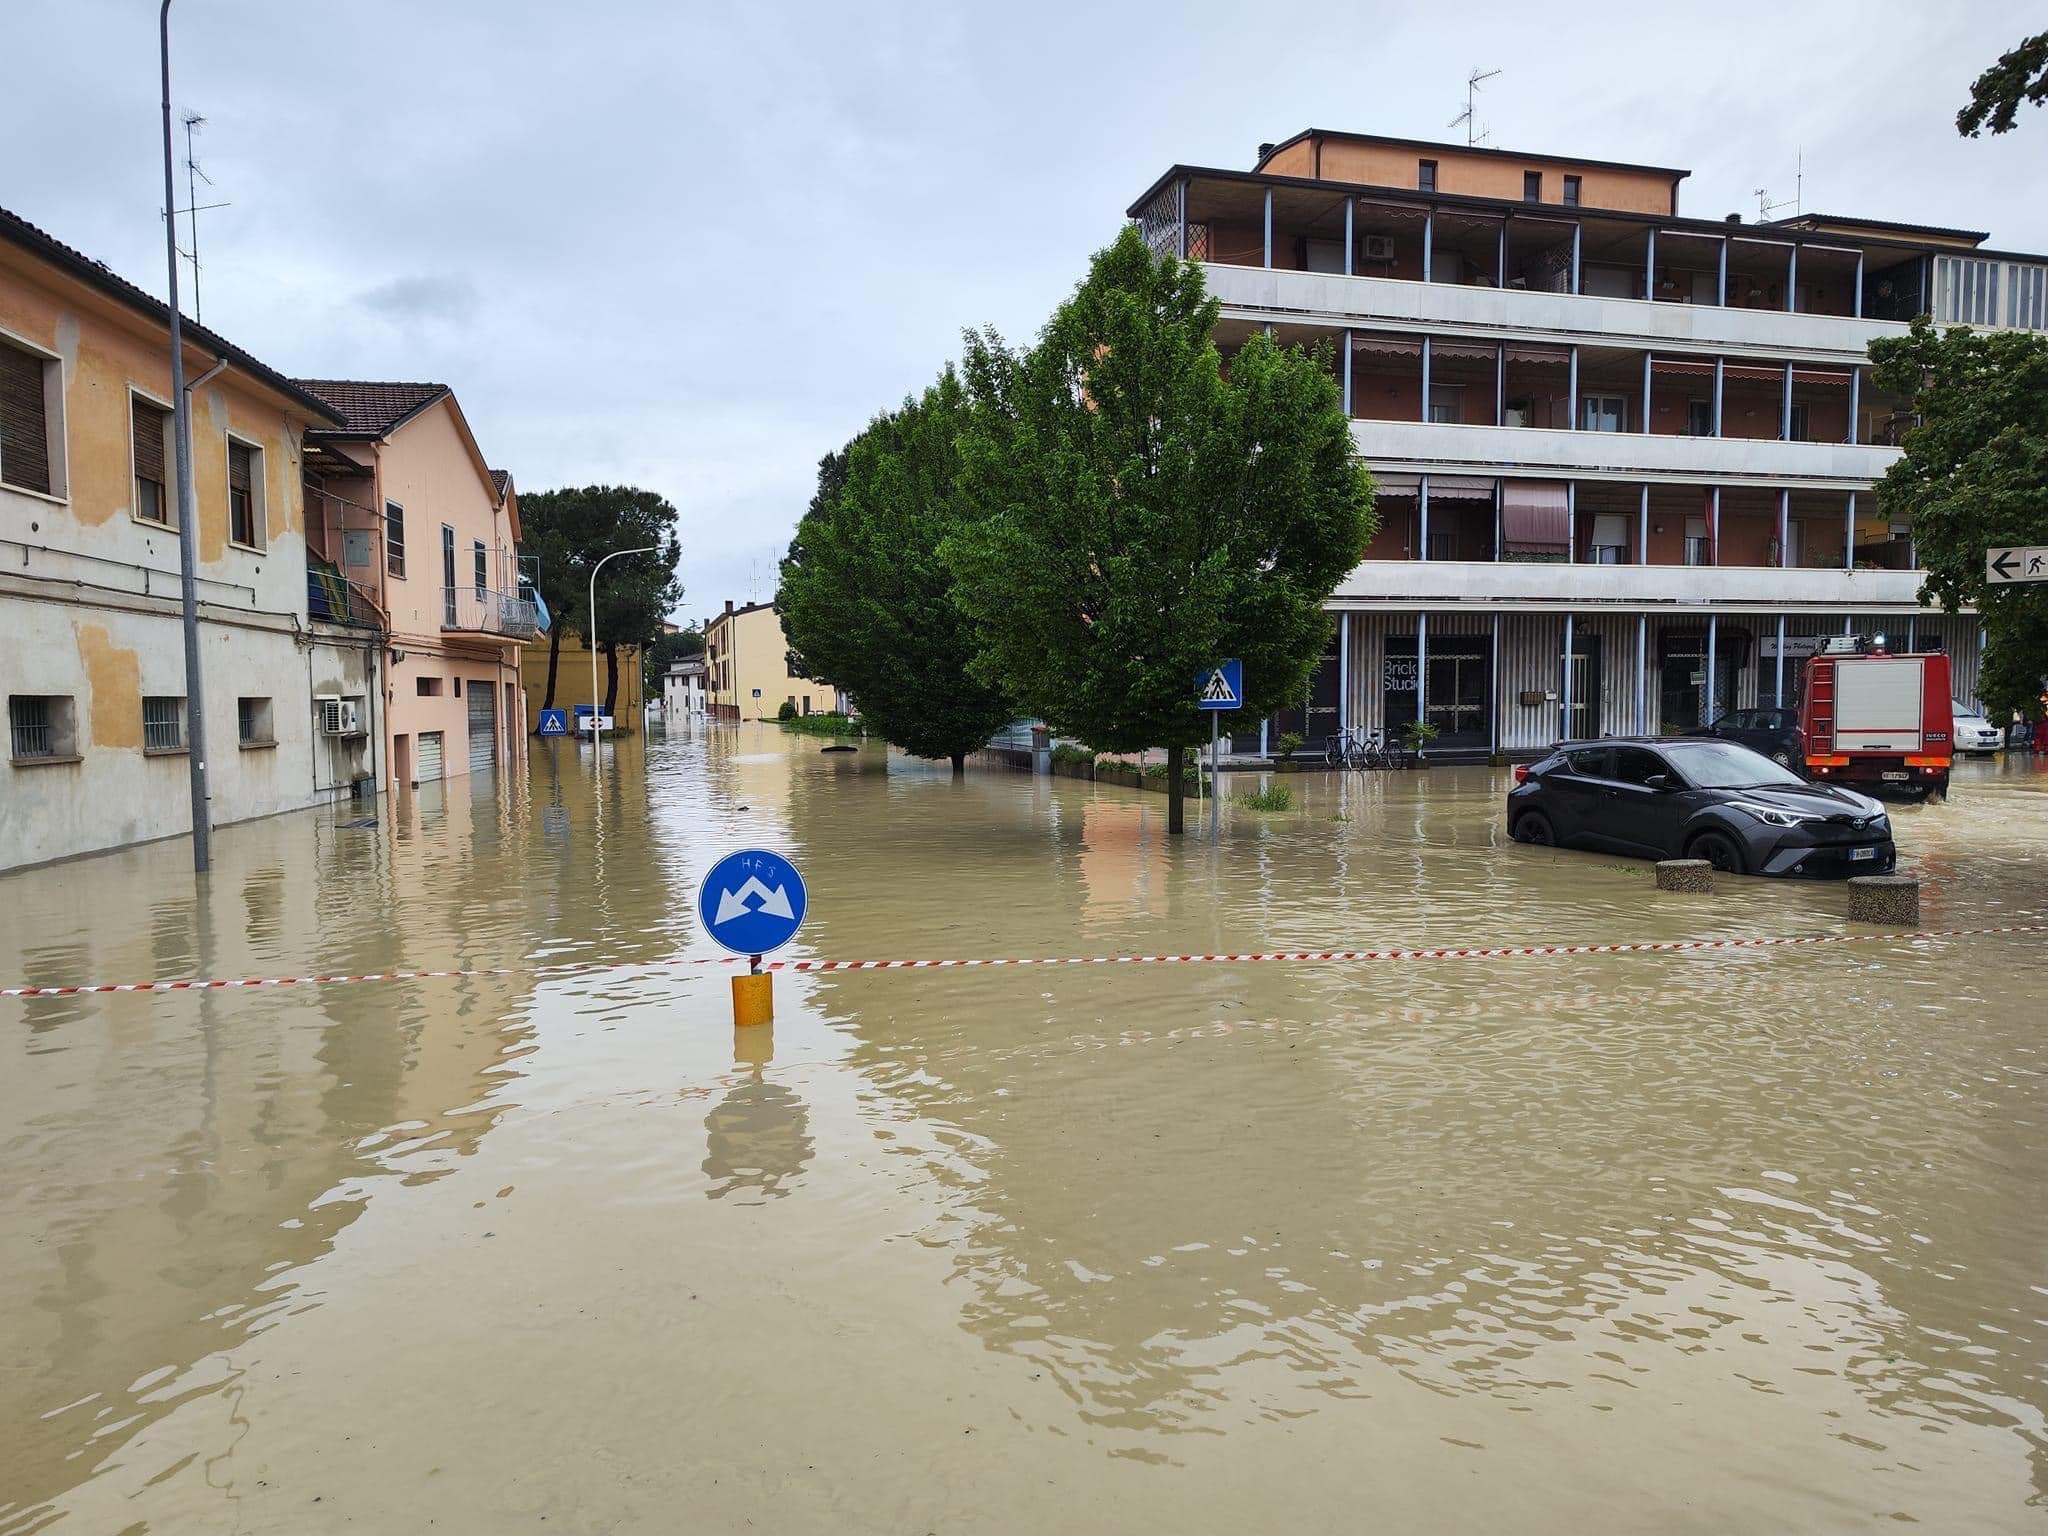 Faenza alluvione, cittadini in aiuto con canoe tra le case